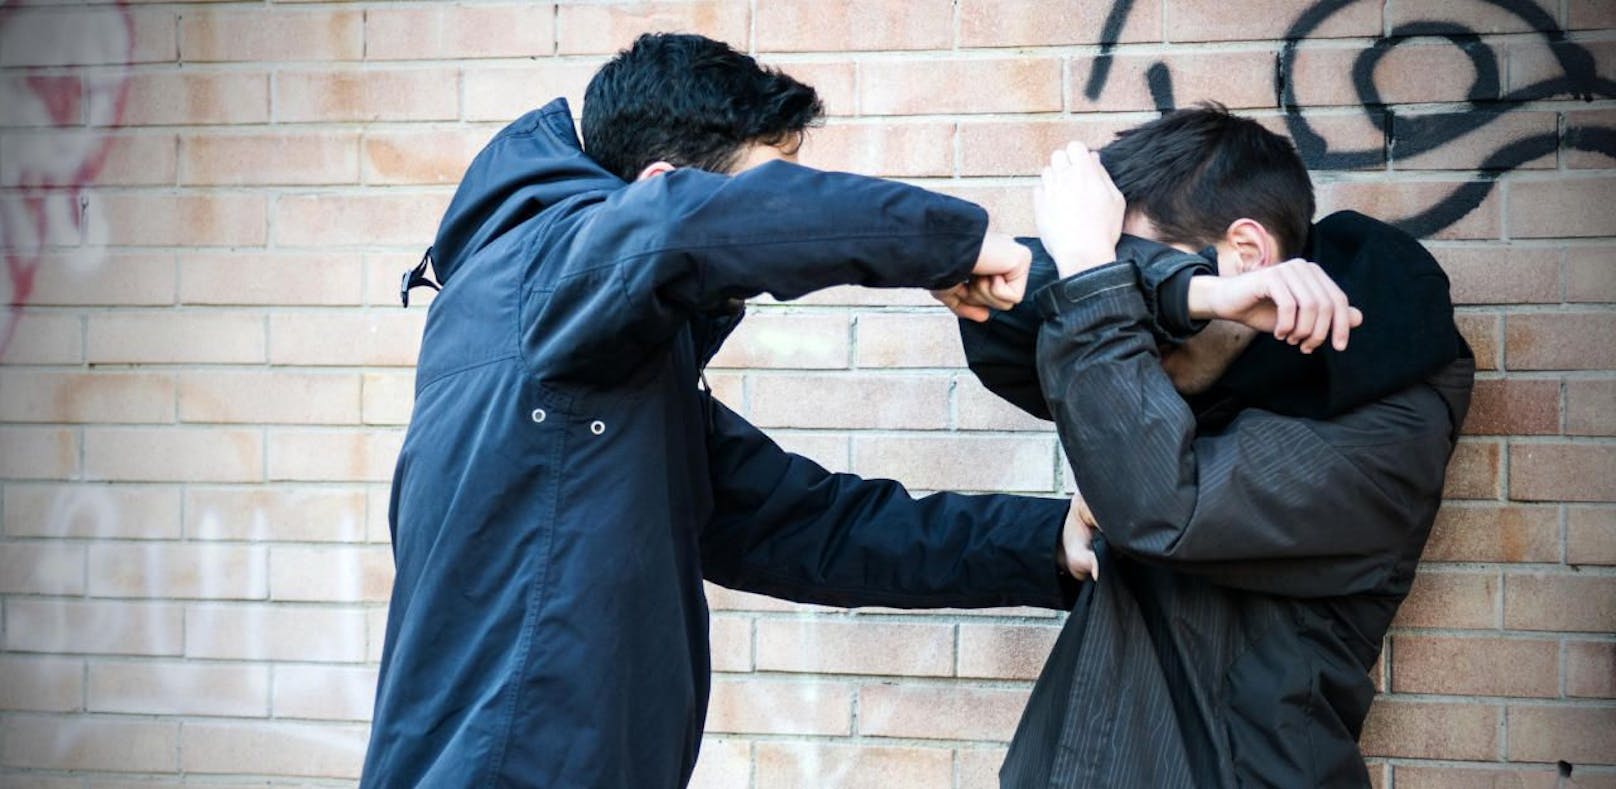 Gewalttätiger Streit unter jungen Männern. Symbolfoto